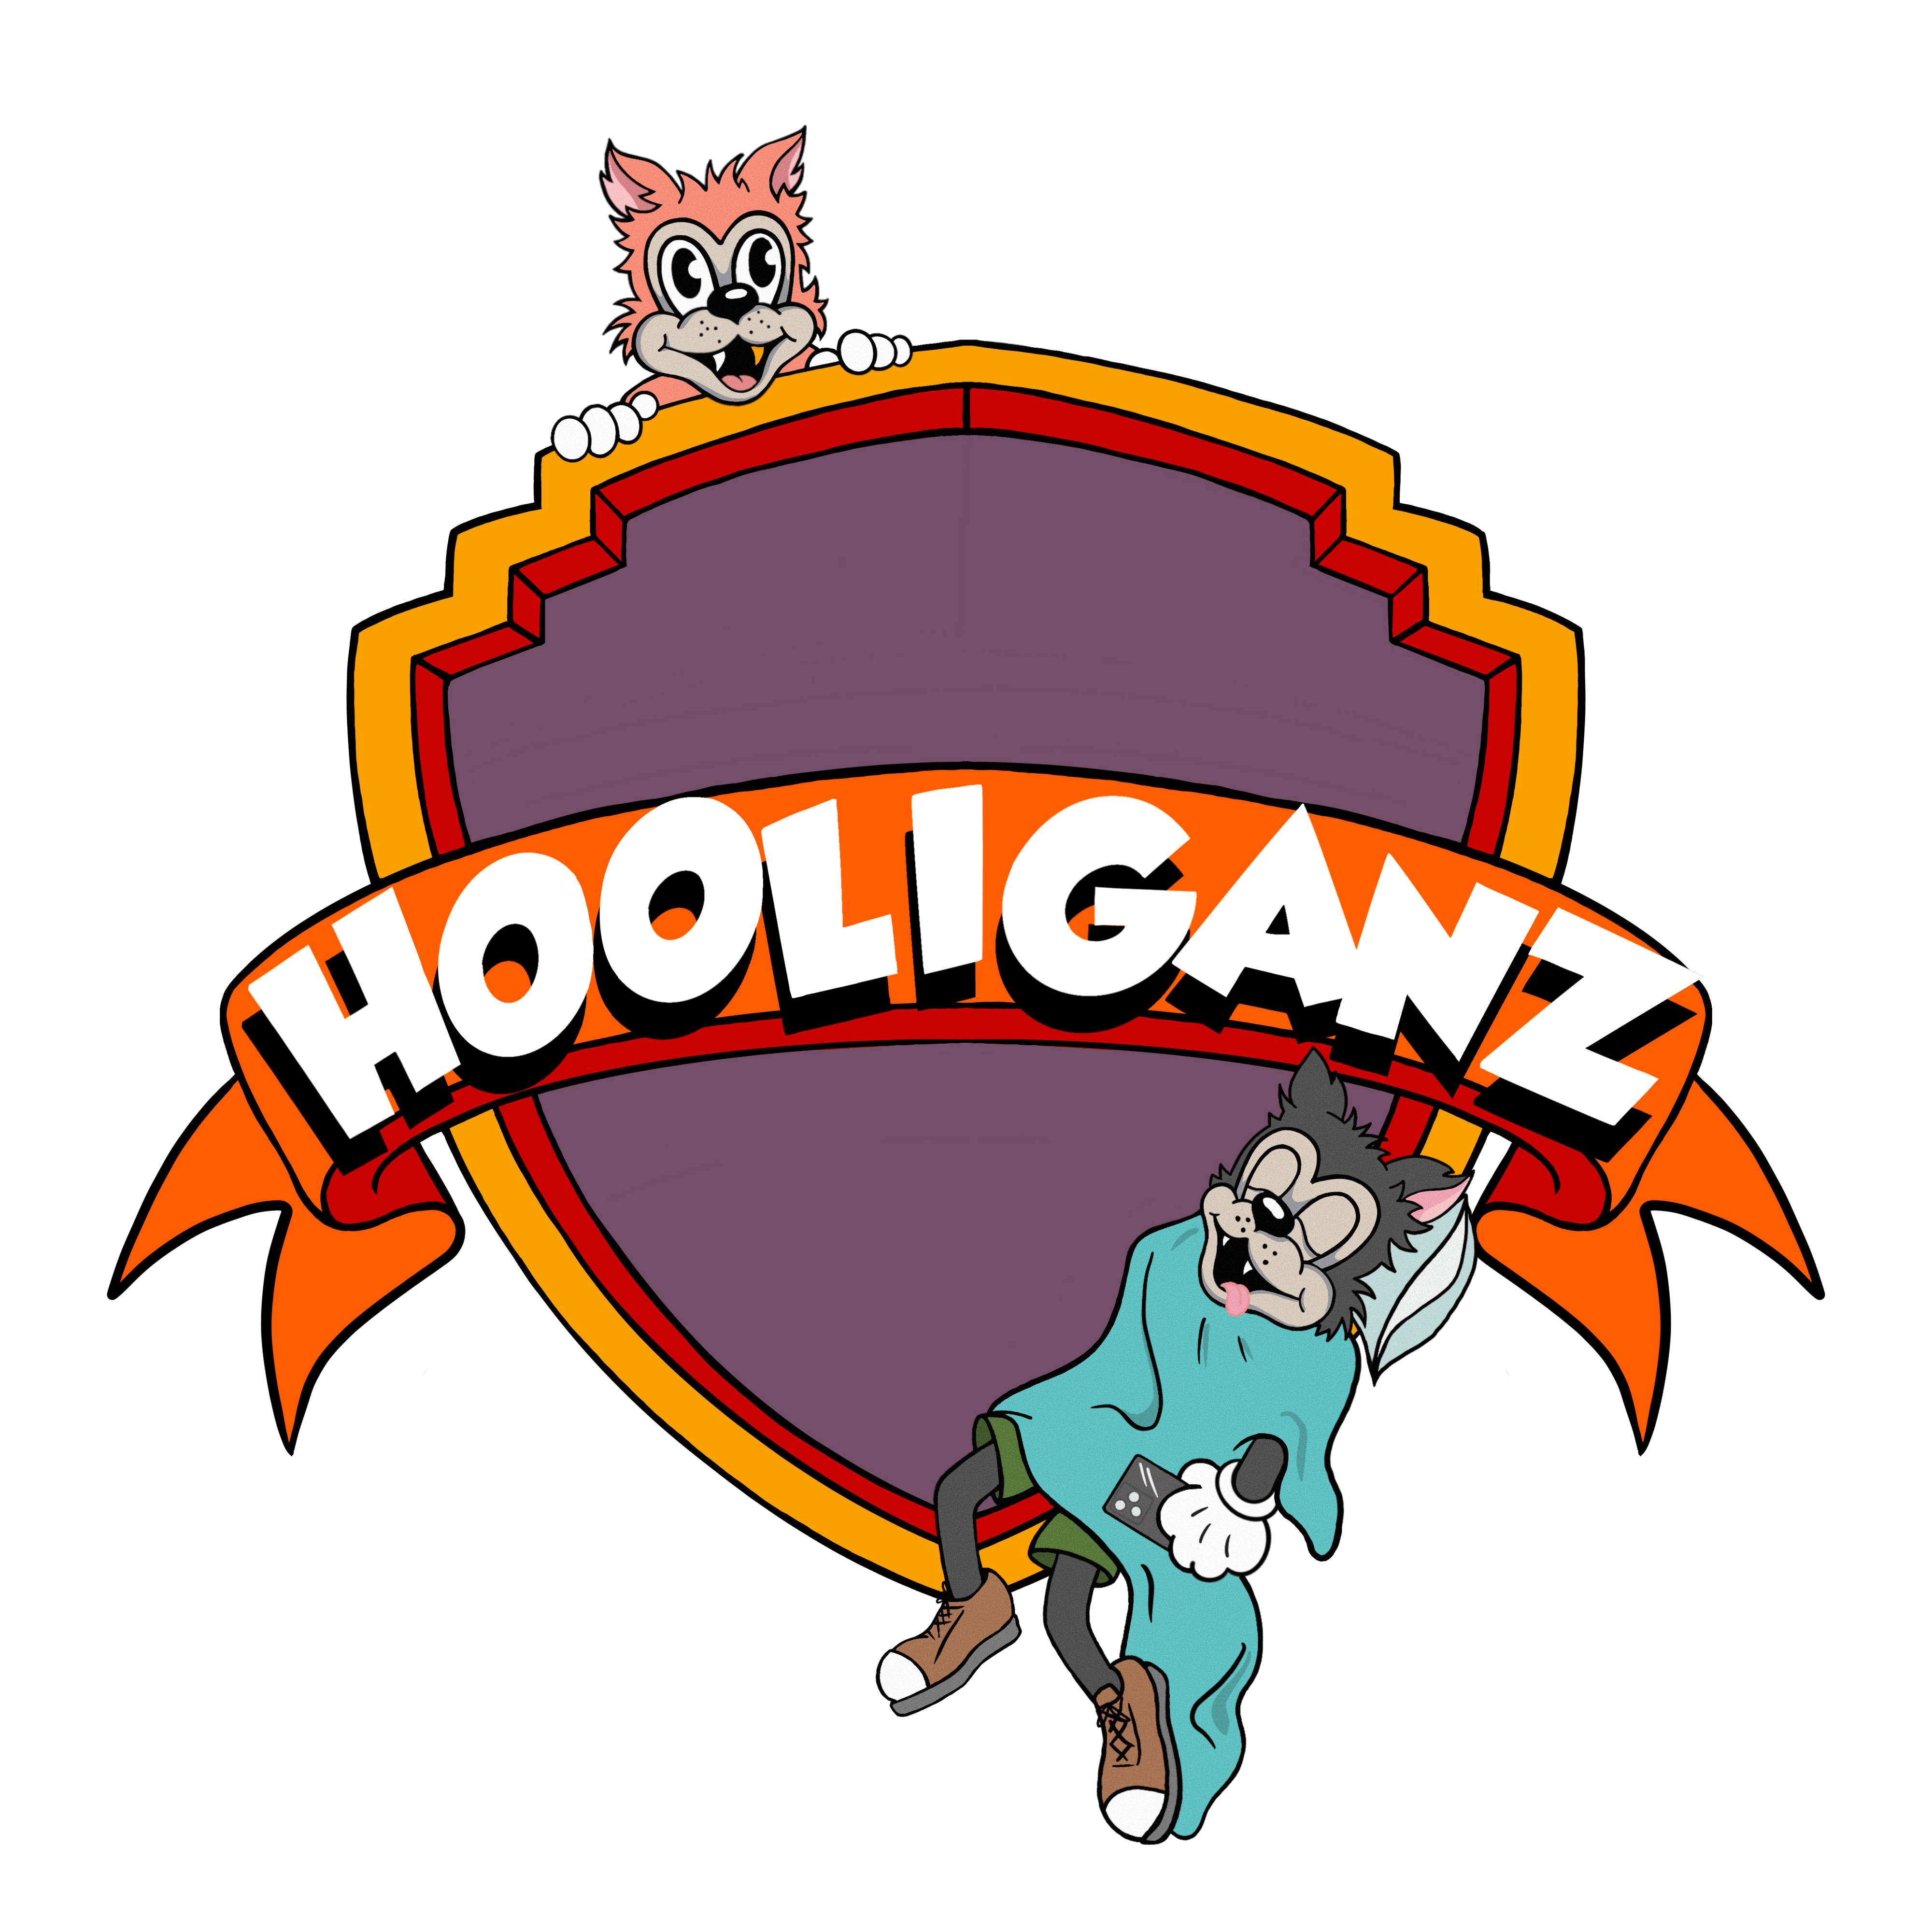 Hooliganz_Deployer 横幅